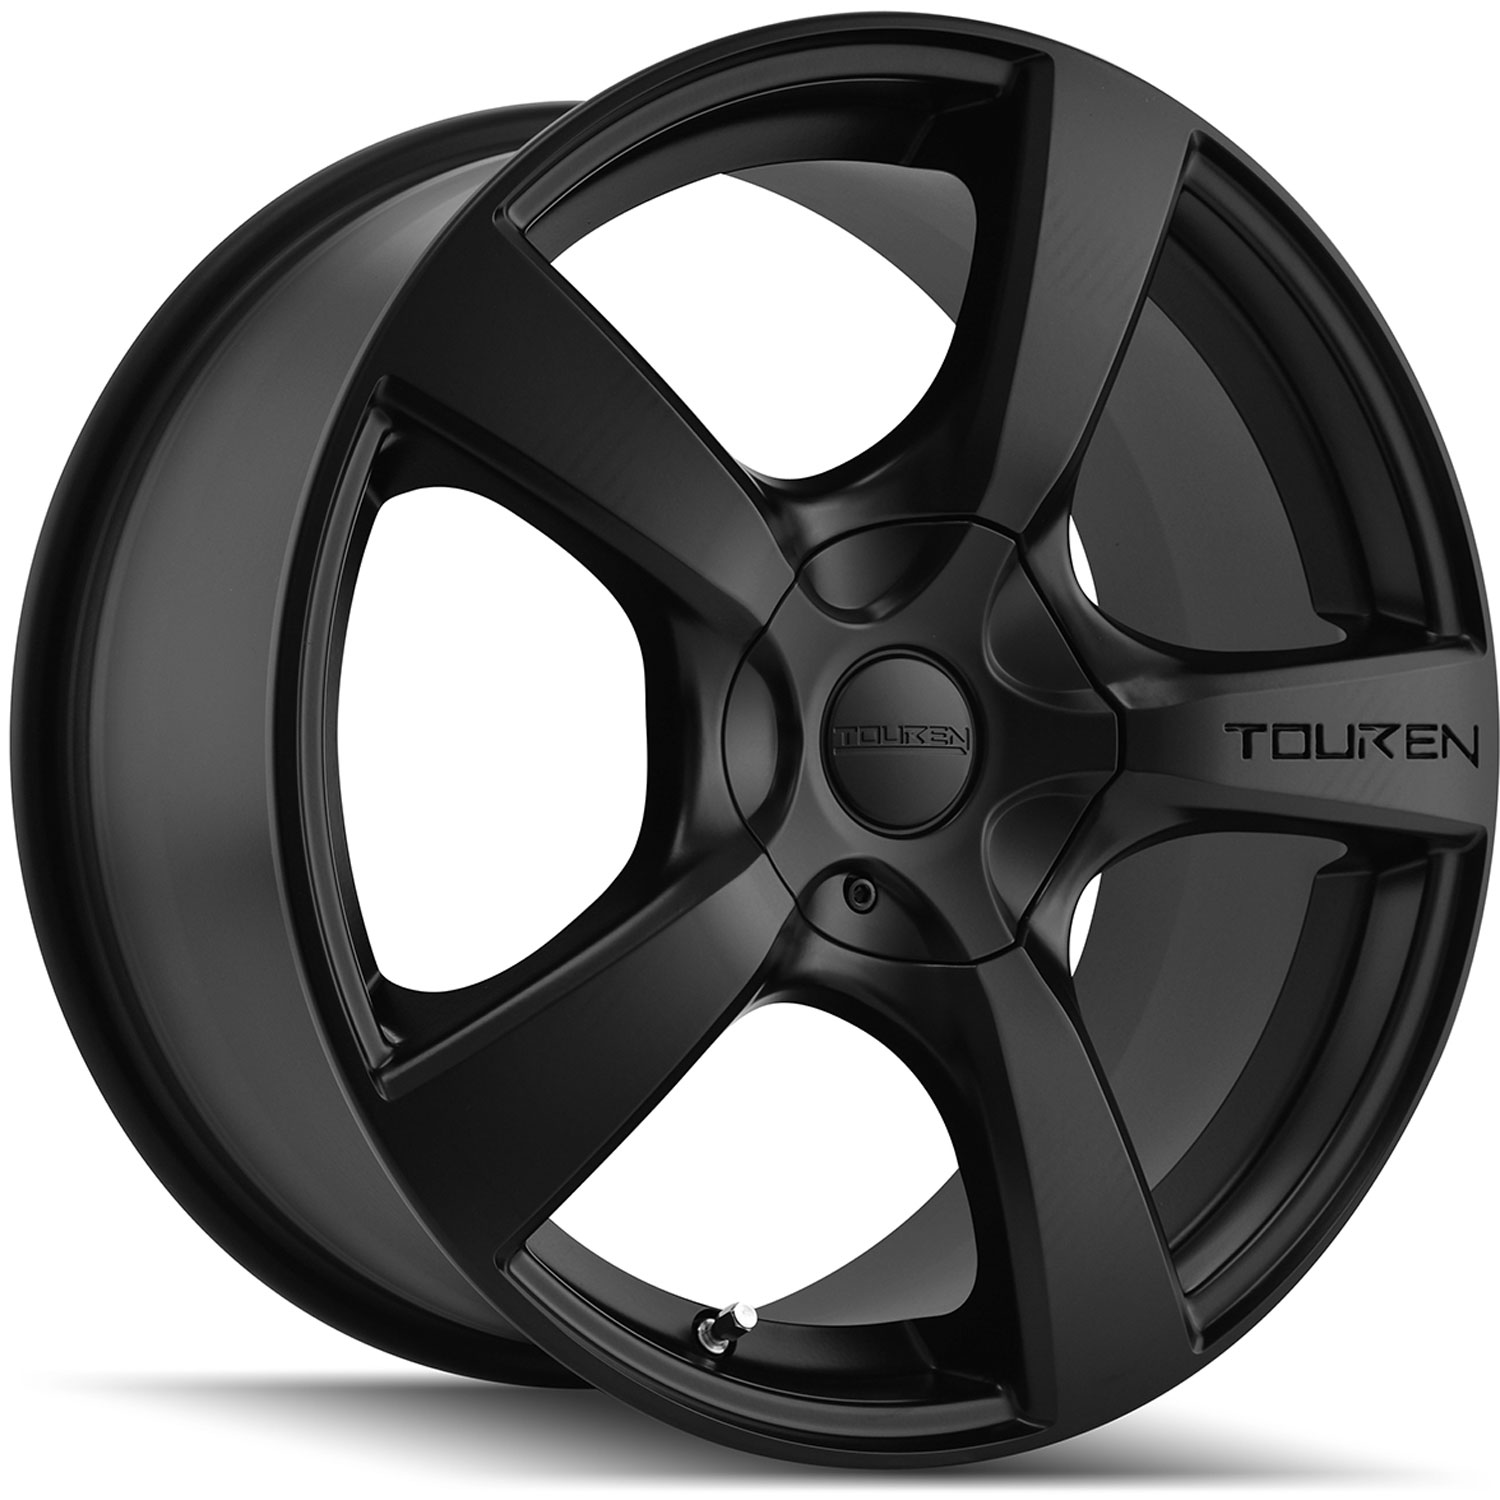 Touren TR9 Series Wheel Size: 19" x 8.5" Bolt Circle: 5 x 112mm/120mm